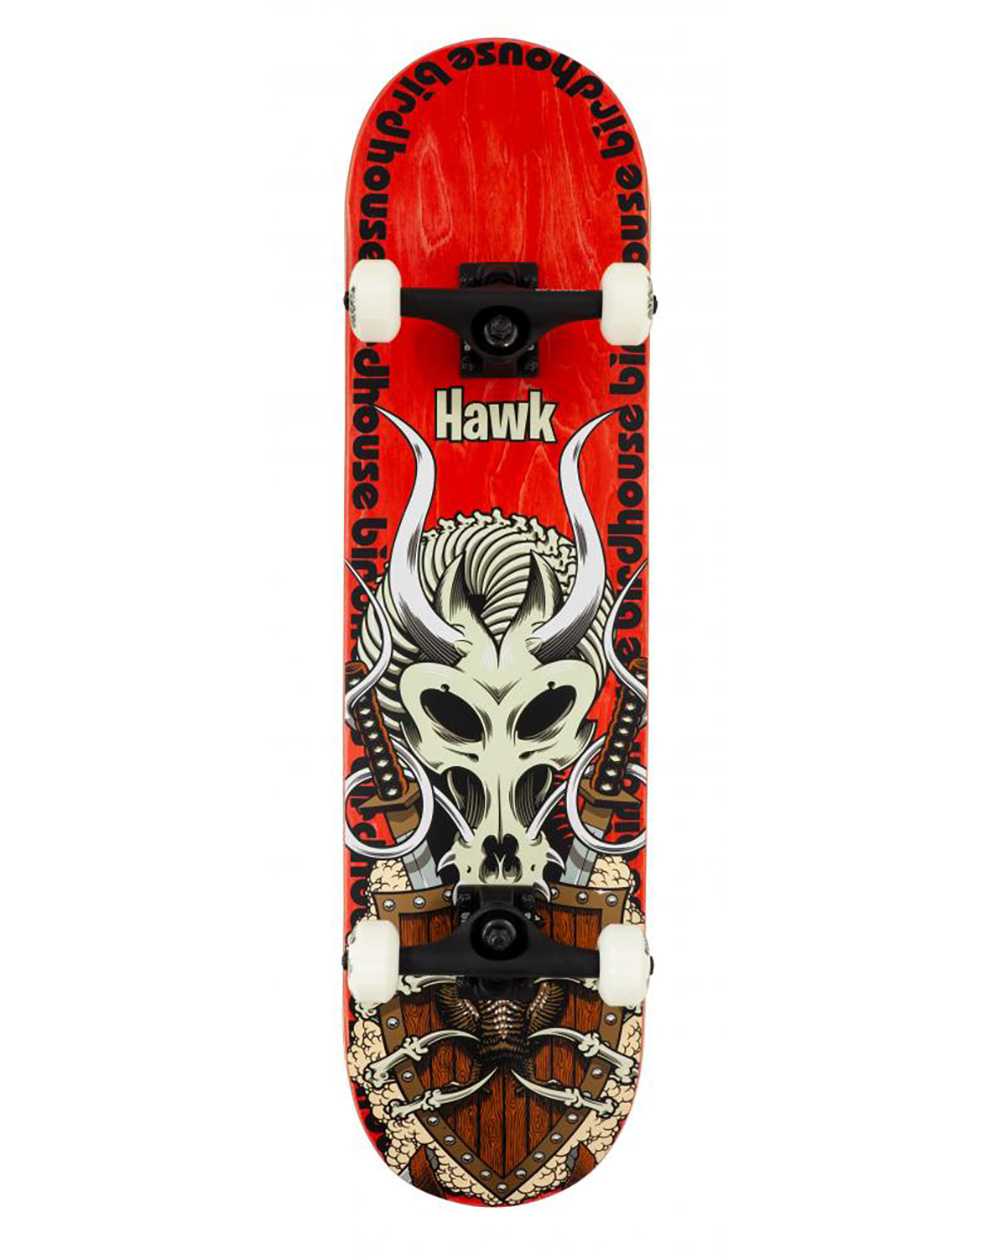 Birdhouse Skateboard Hawk Gladiator 8.125" Red